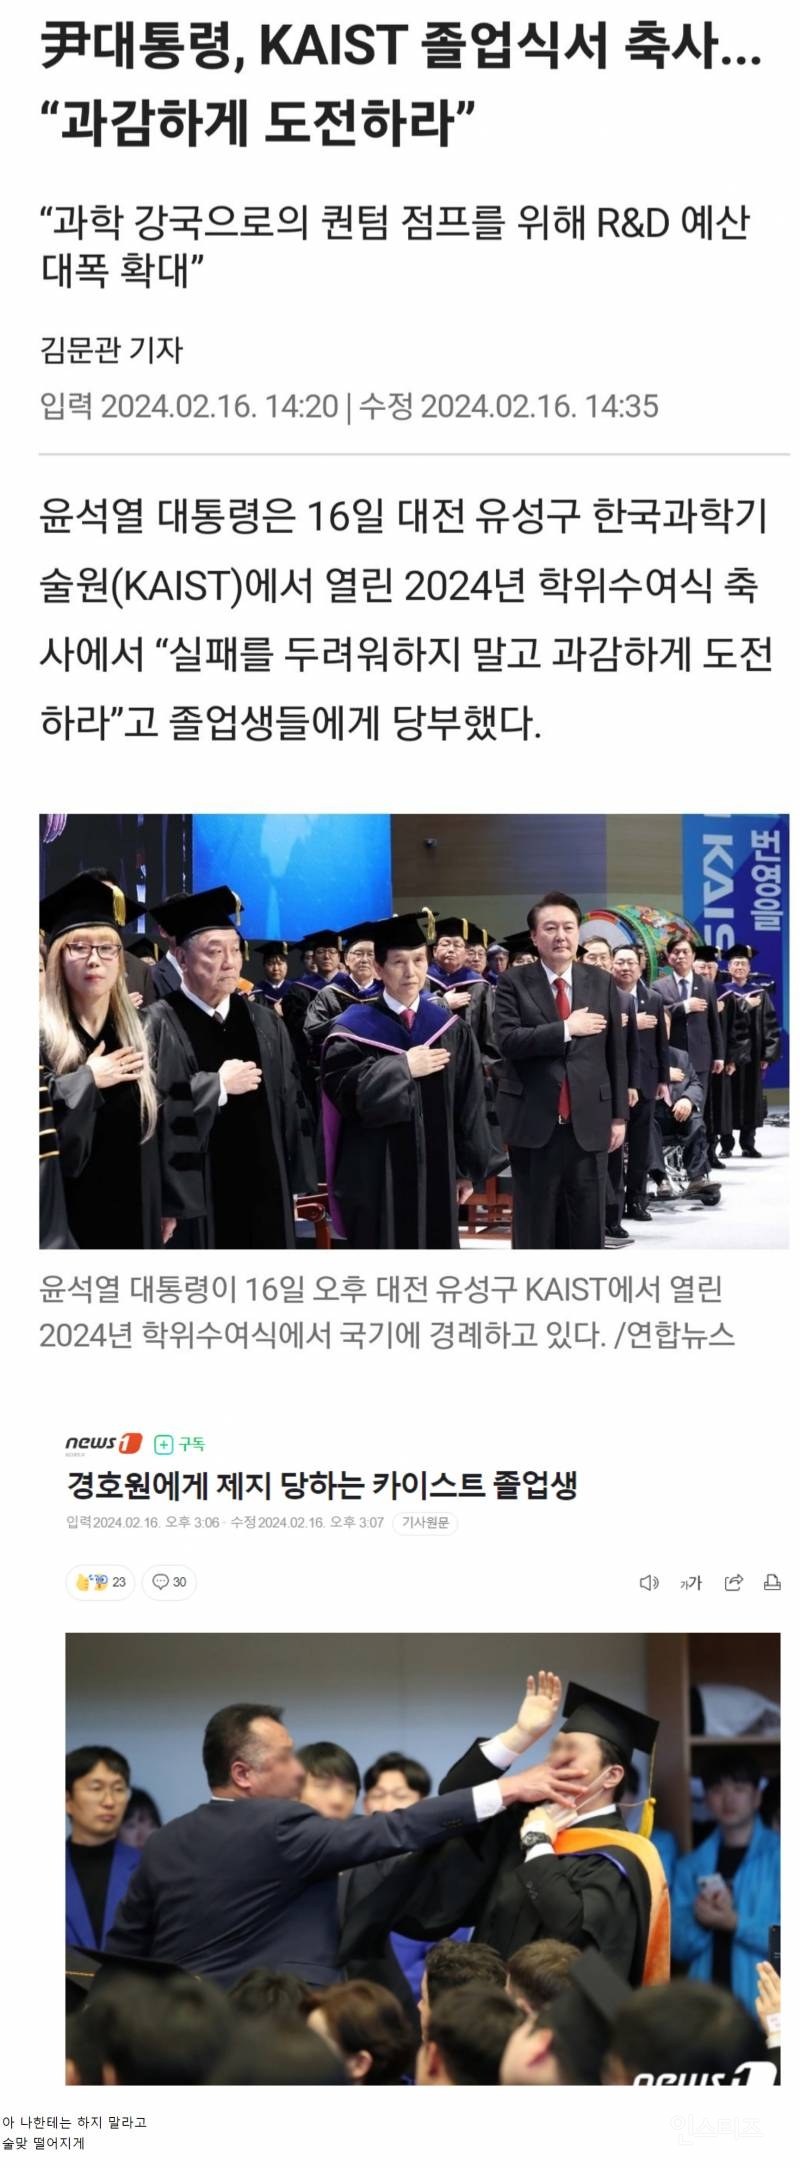 (충격.영상.배경설명) 실시간 난리난 카이스트 졸업식.(feat. 윤)...mp4 | 인스티즈